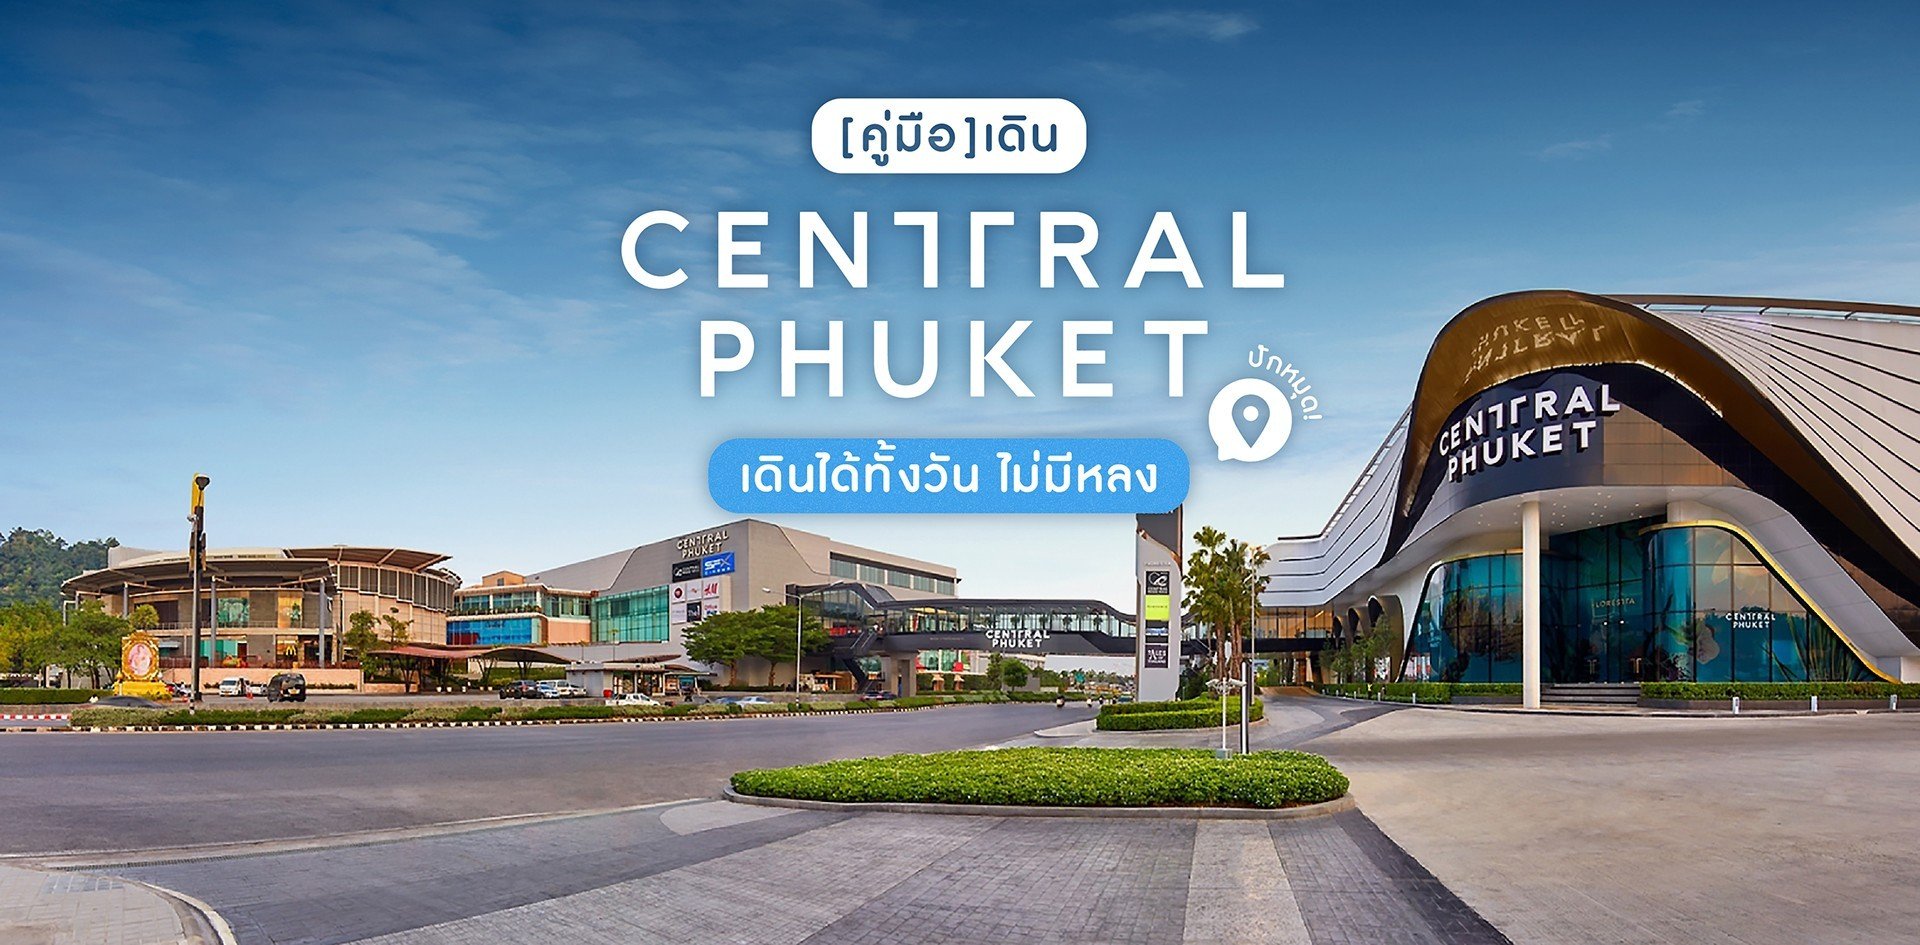 central phuket festival